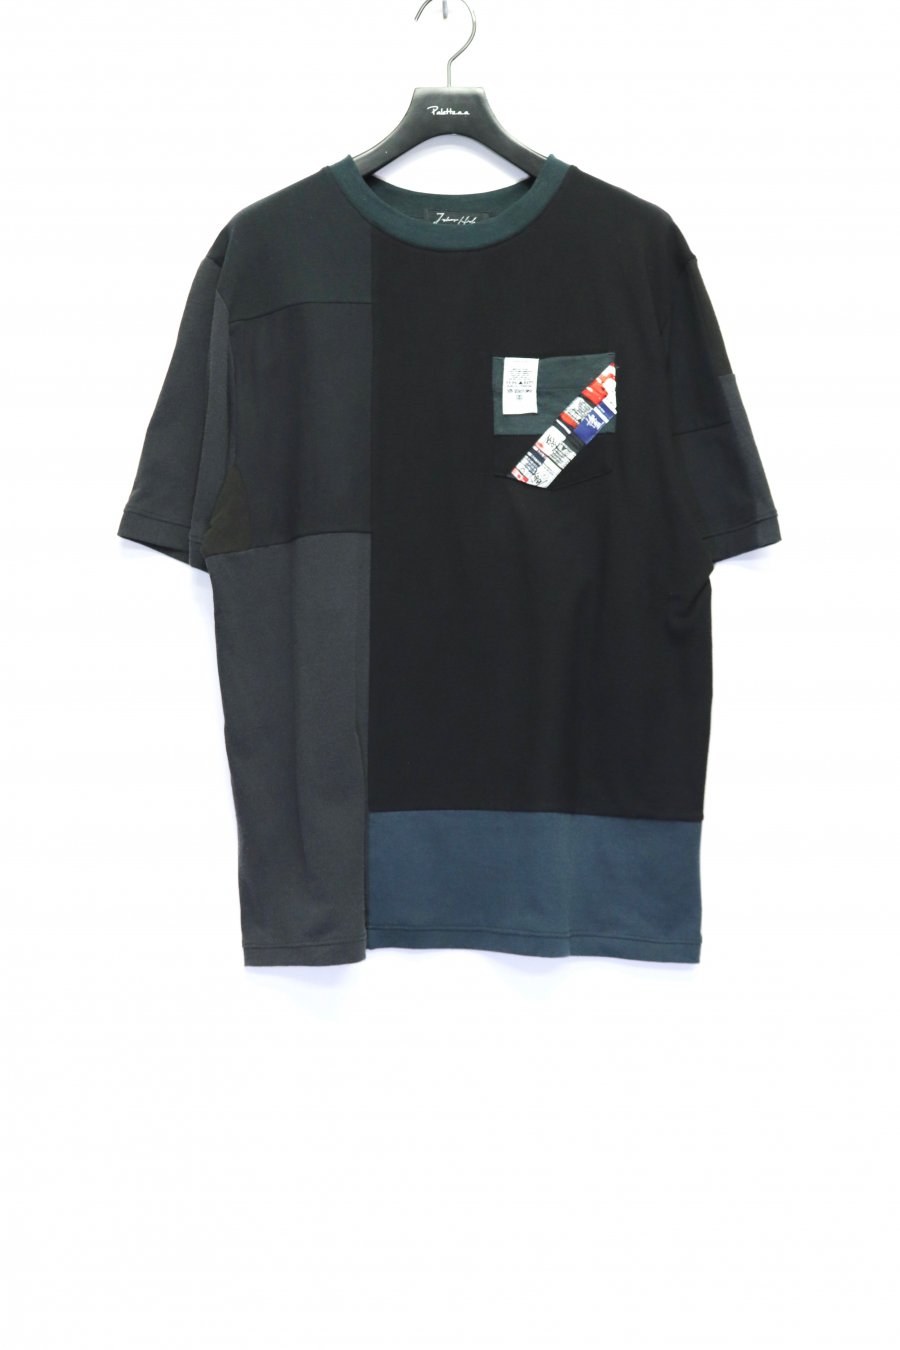 stussy 再構築 Tシャツ hioki takaya - Tシャツ/カットソー(半袖/袖なし)